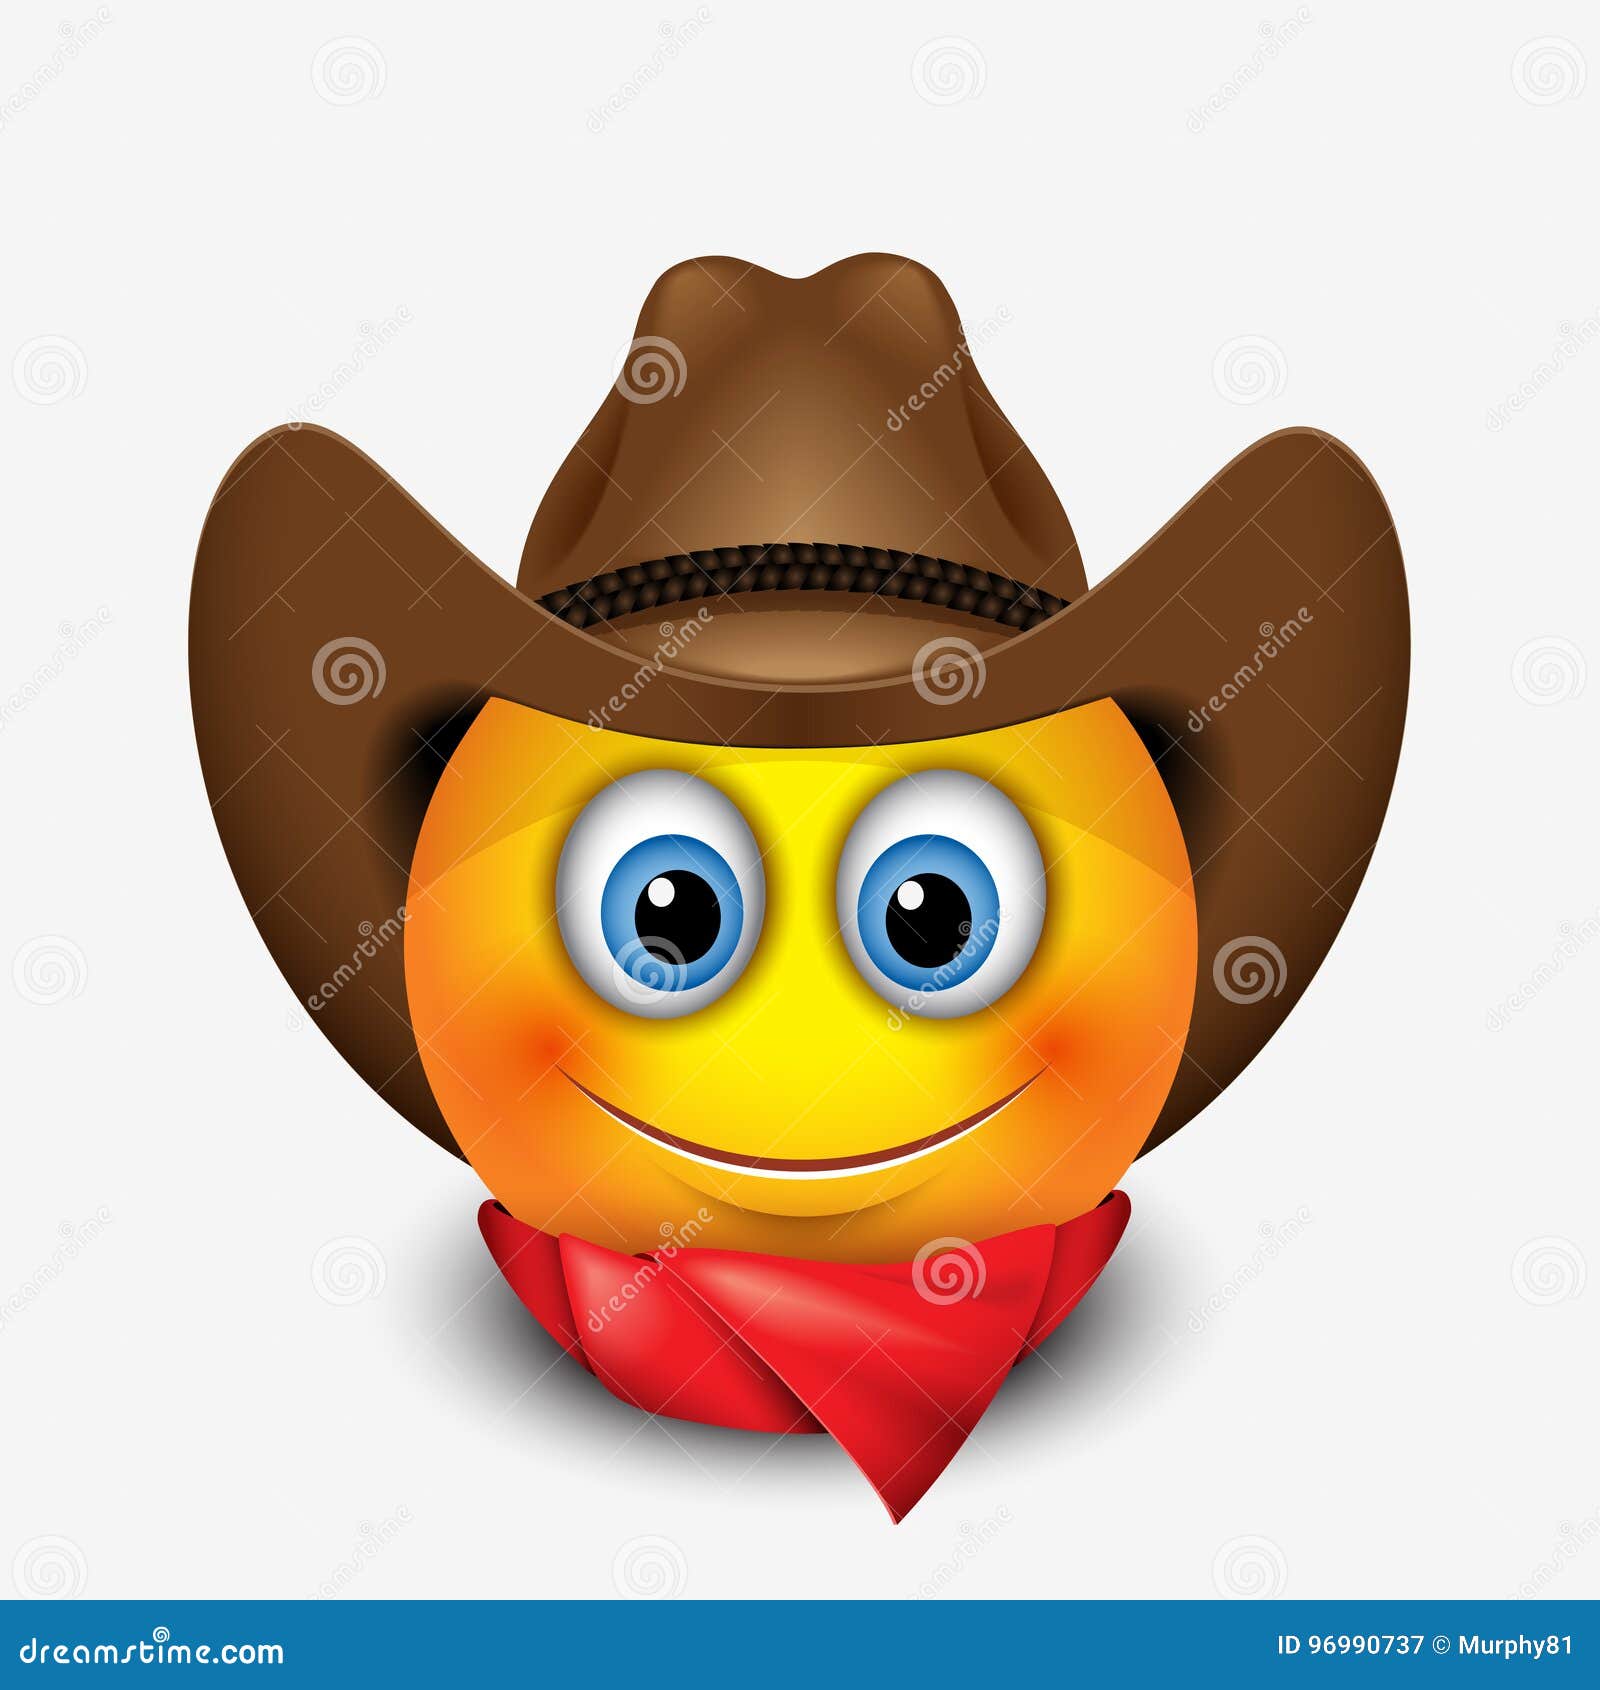 cute smiling emoticon wearing cowboy hat, emoji, smiley -  